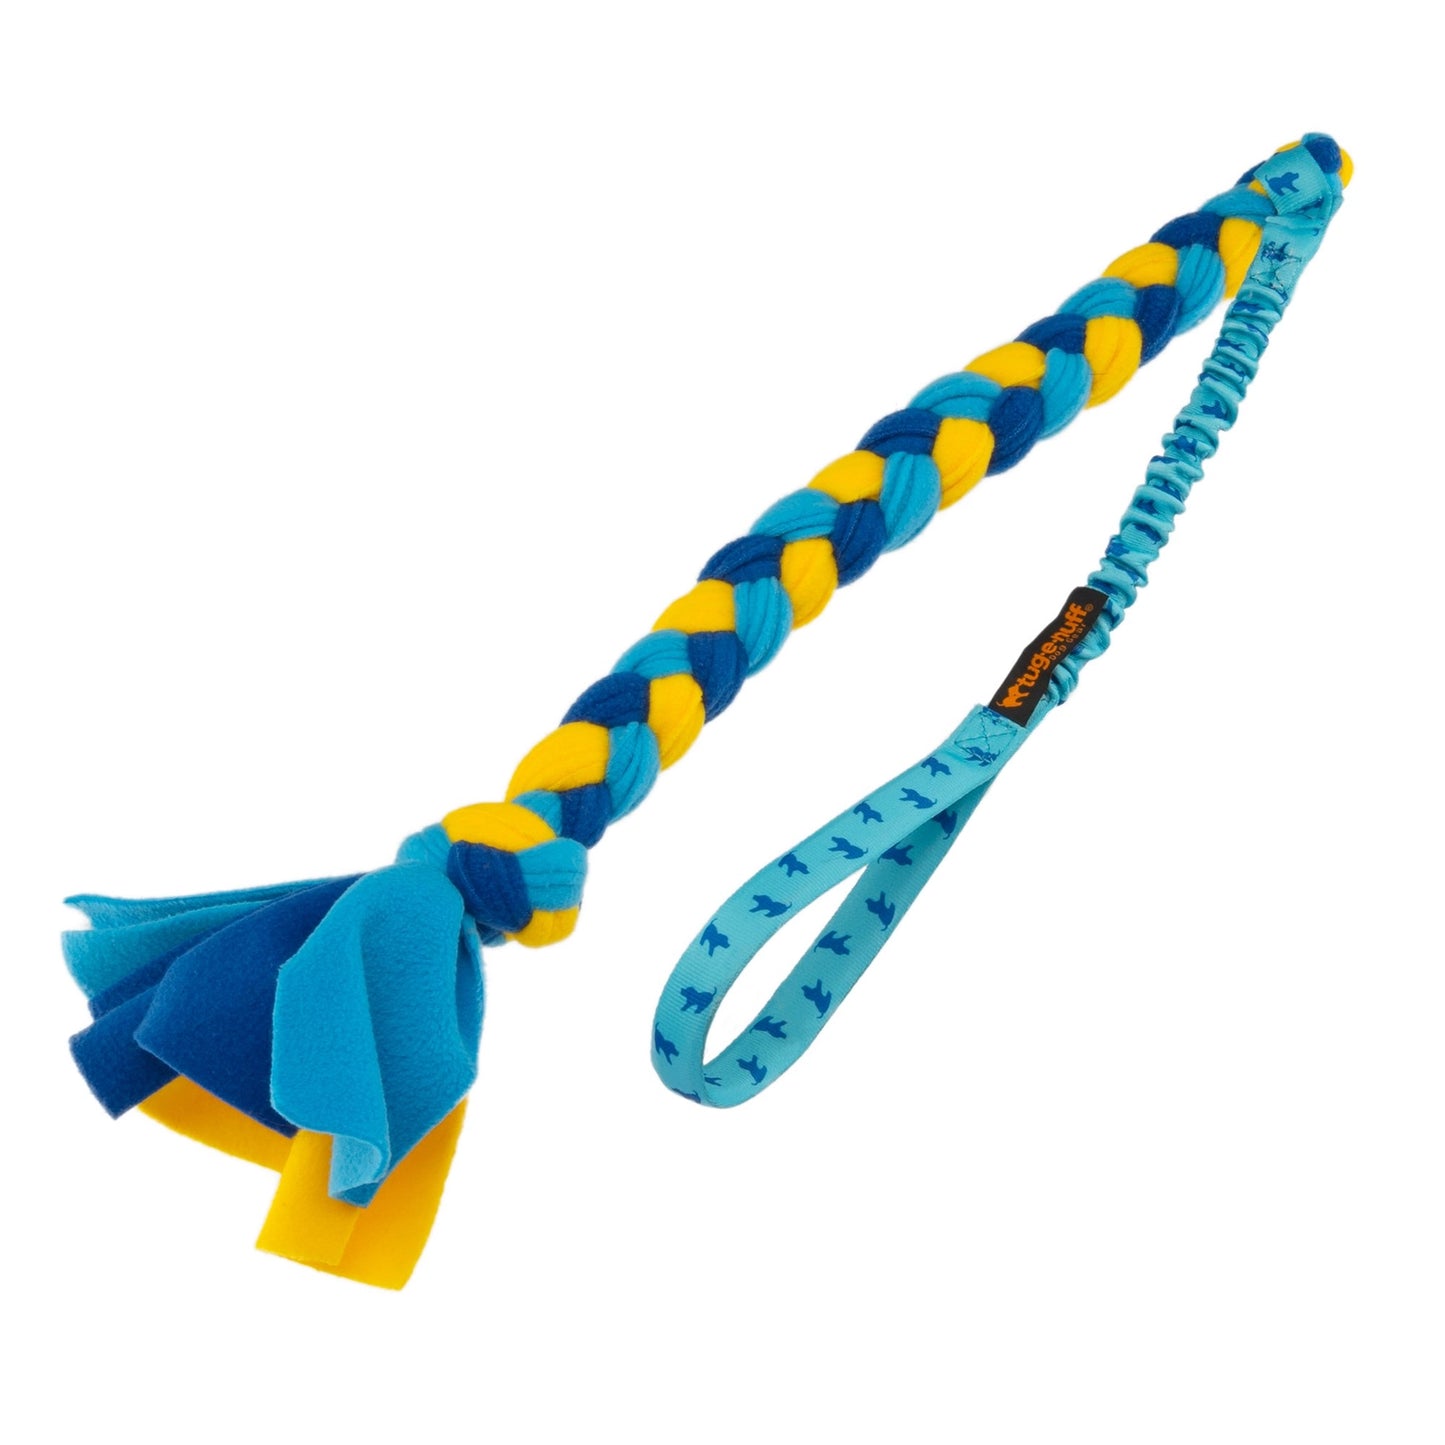 Bungee Handled Fleece - Zerrspielzeug - hellblau/blau/gelb